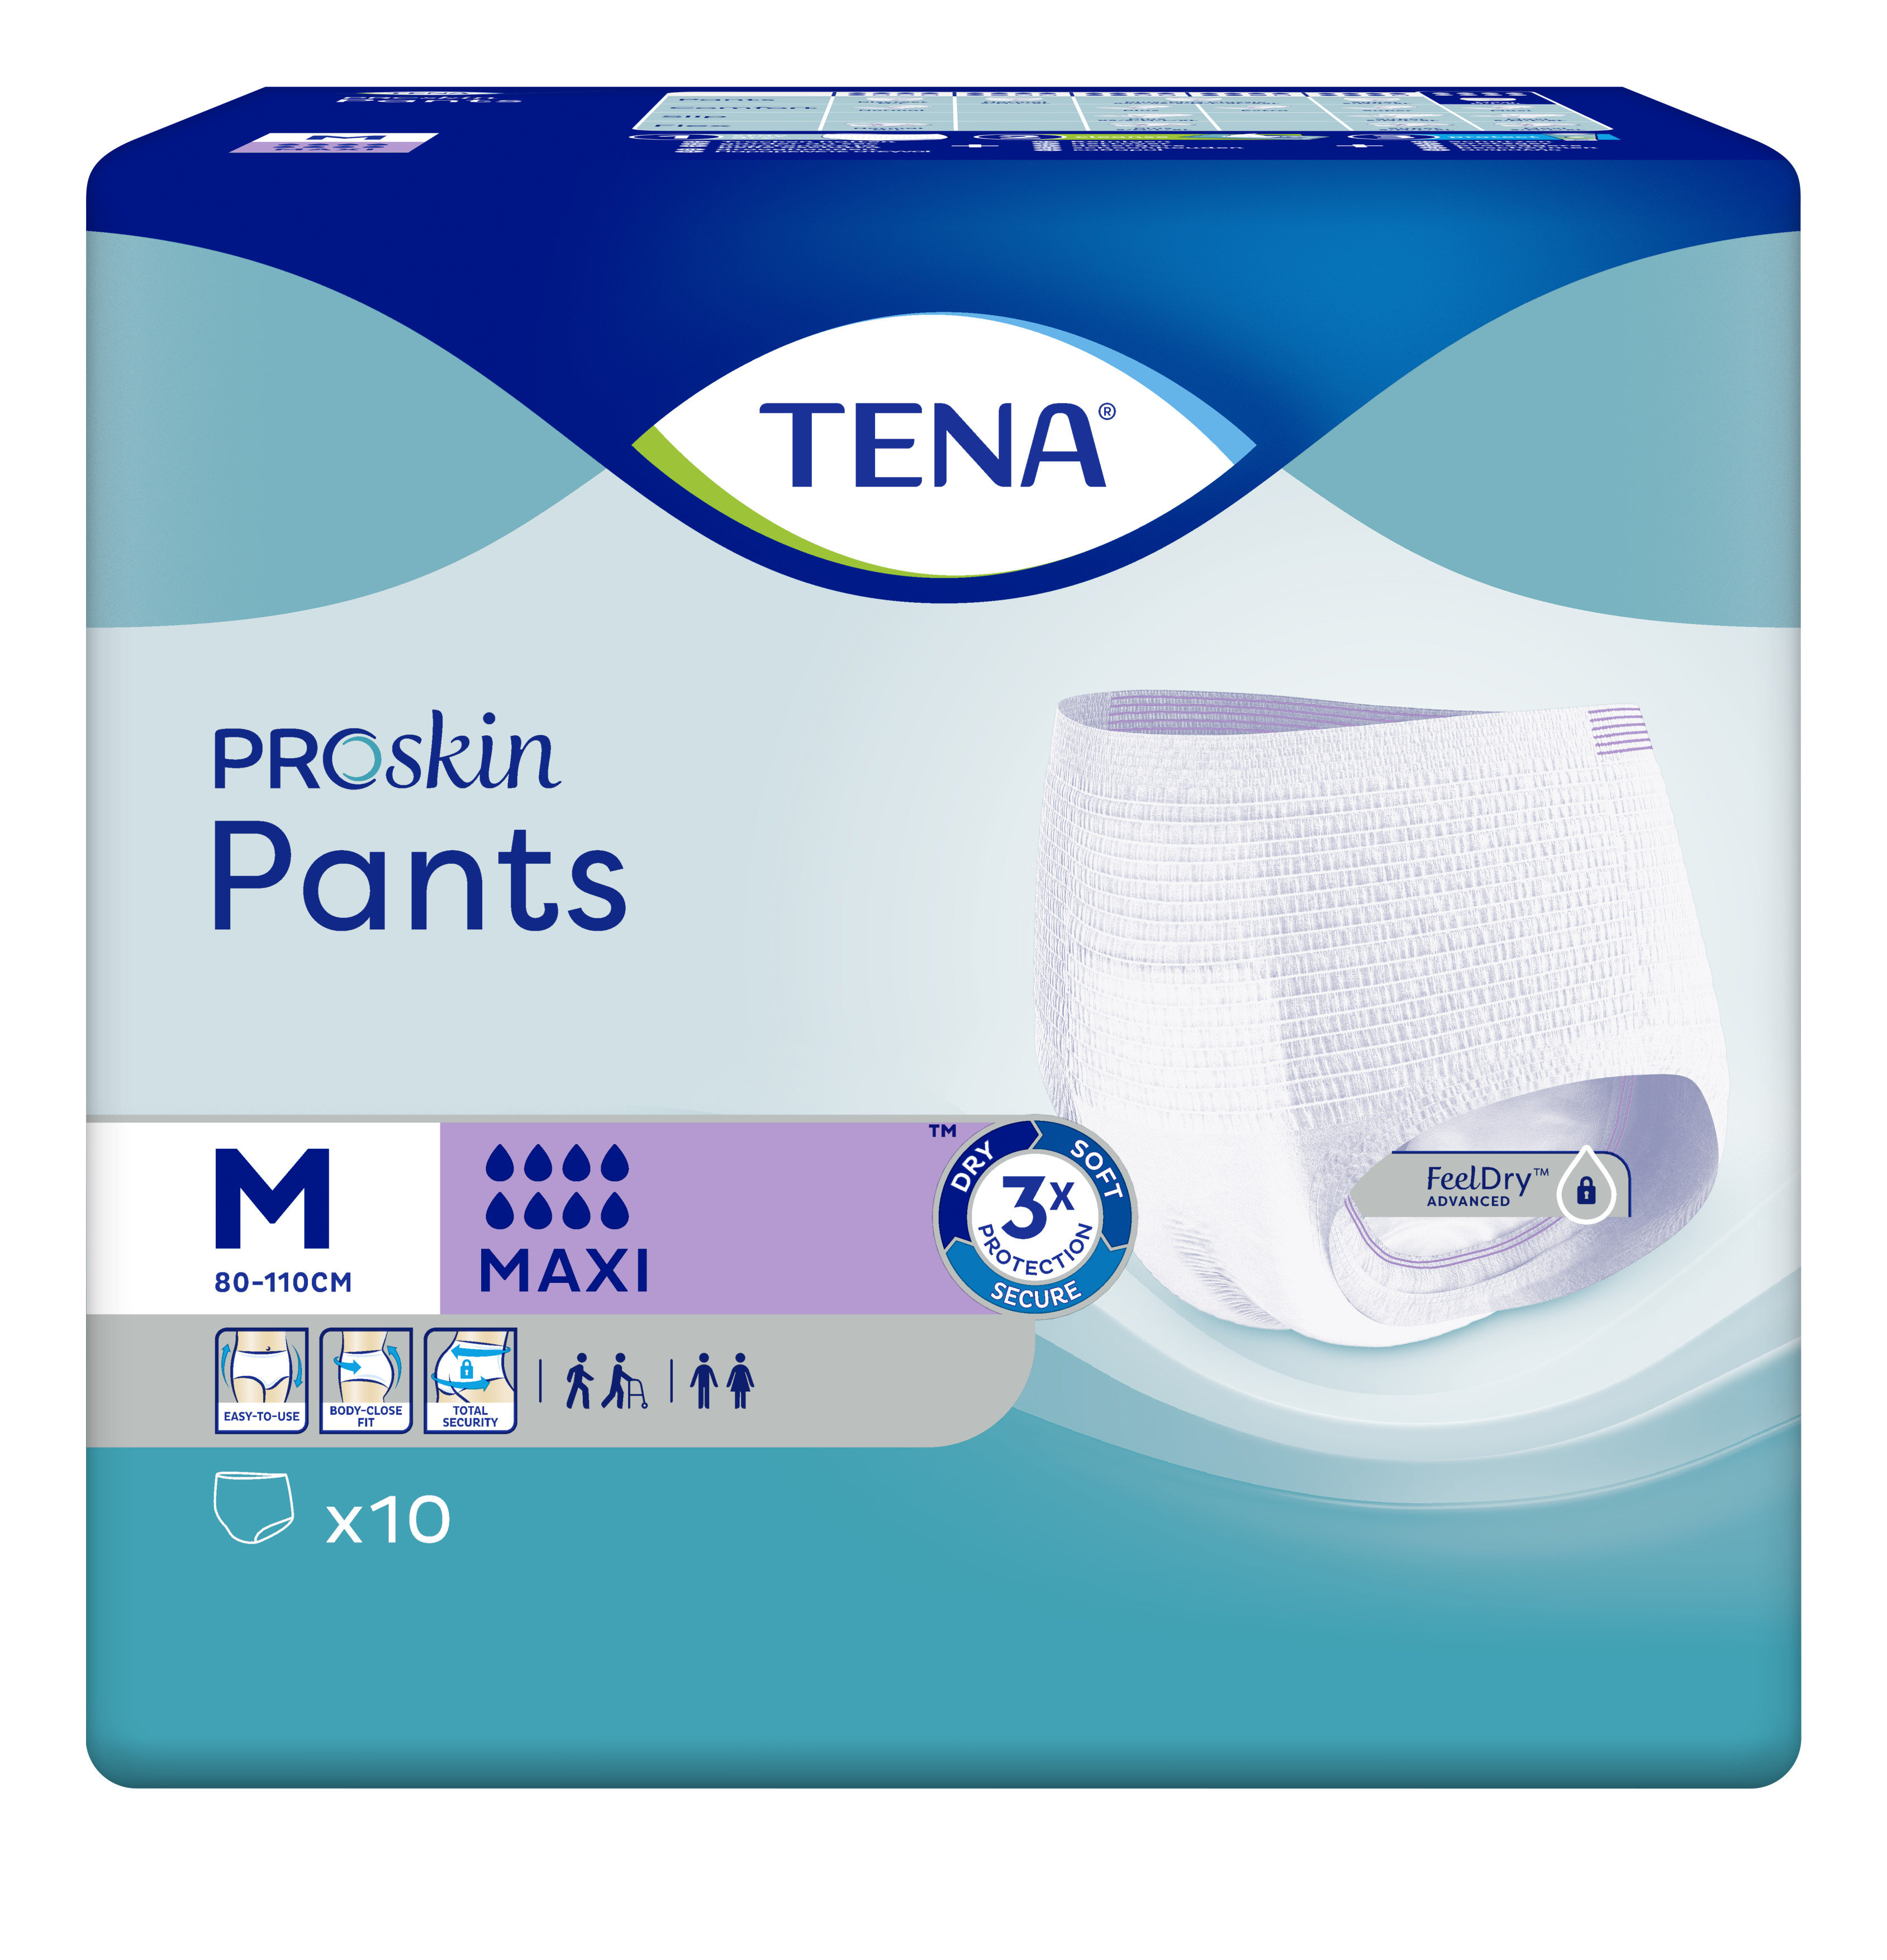 TENA PROskin Pants Maxi Medium